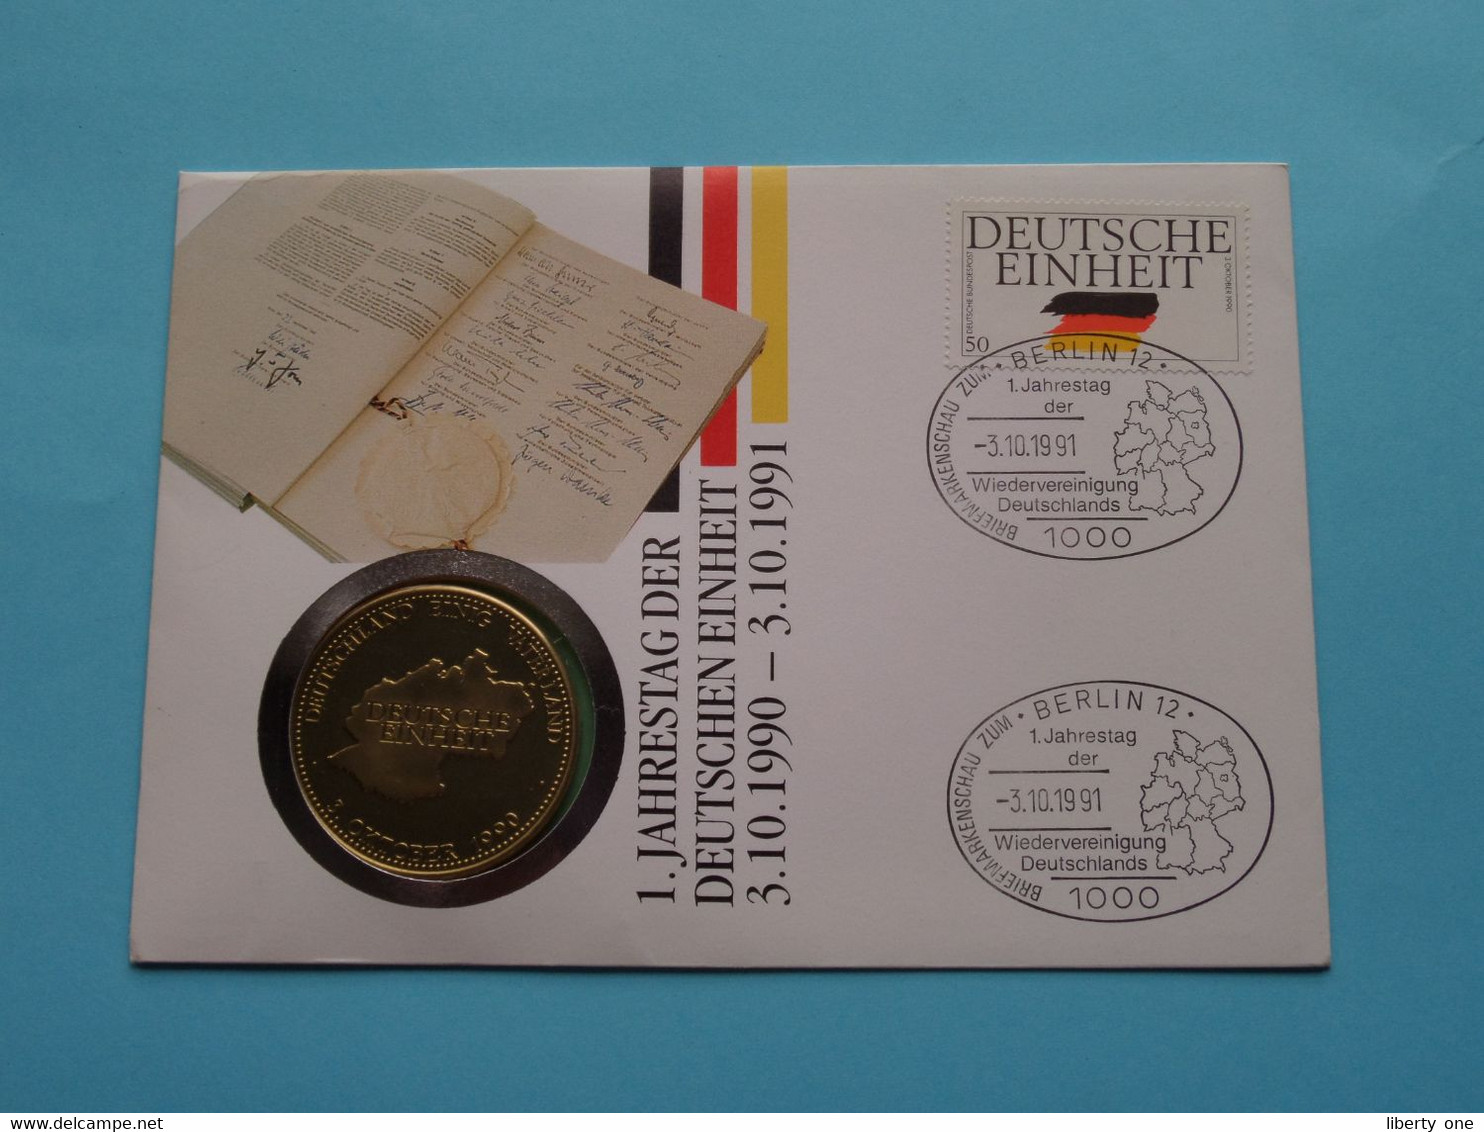 DEUTSCHE EINHEIT 3 OKTOBER 1990 ( Stamp > 1991 ) N° 2708 ! - Monedas Elongadas (elongated Coins)